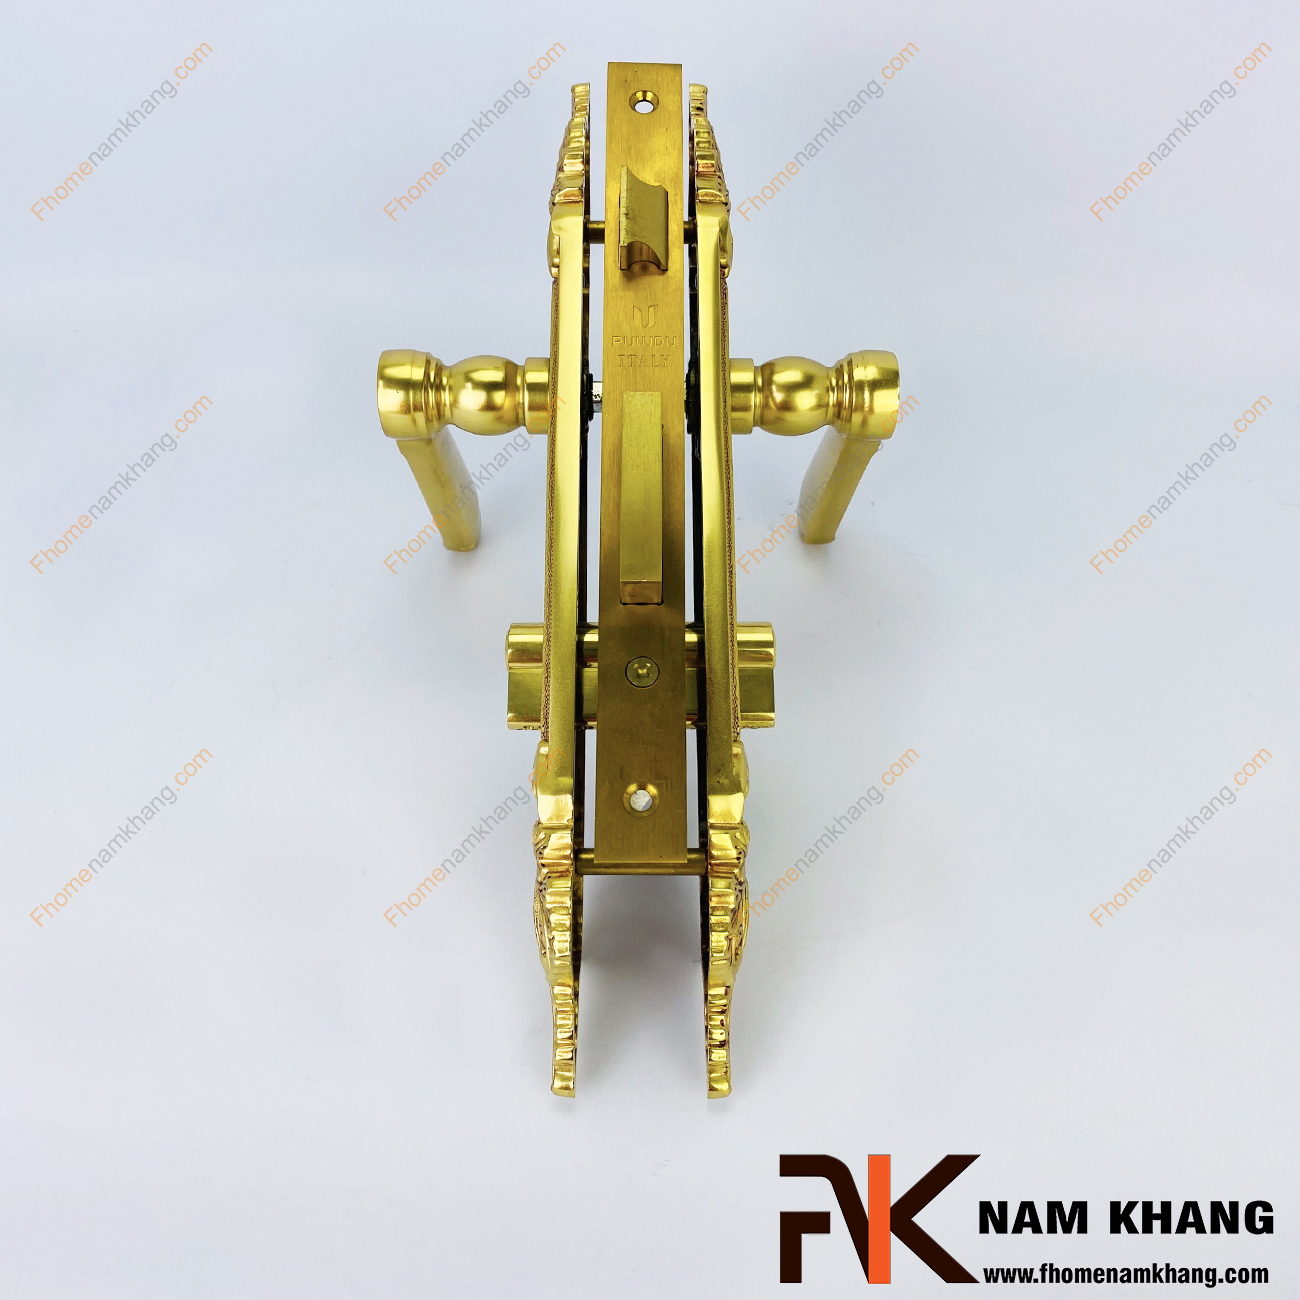 Khóa cửa chính từ chất liệu đồng vàng cao cấp NK347L-RC là bộ khóa cửa dành chuyên các dạng cửa chính lớn, cao cấp, cửa 2 cánh hoặc 4 cánh bằng gỗ hoặc các chất liệu khác